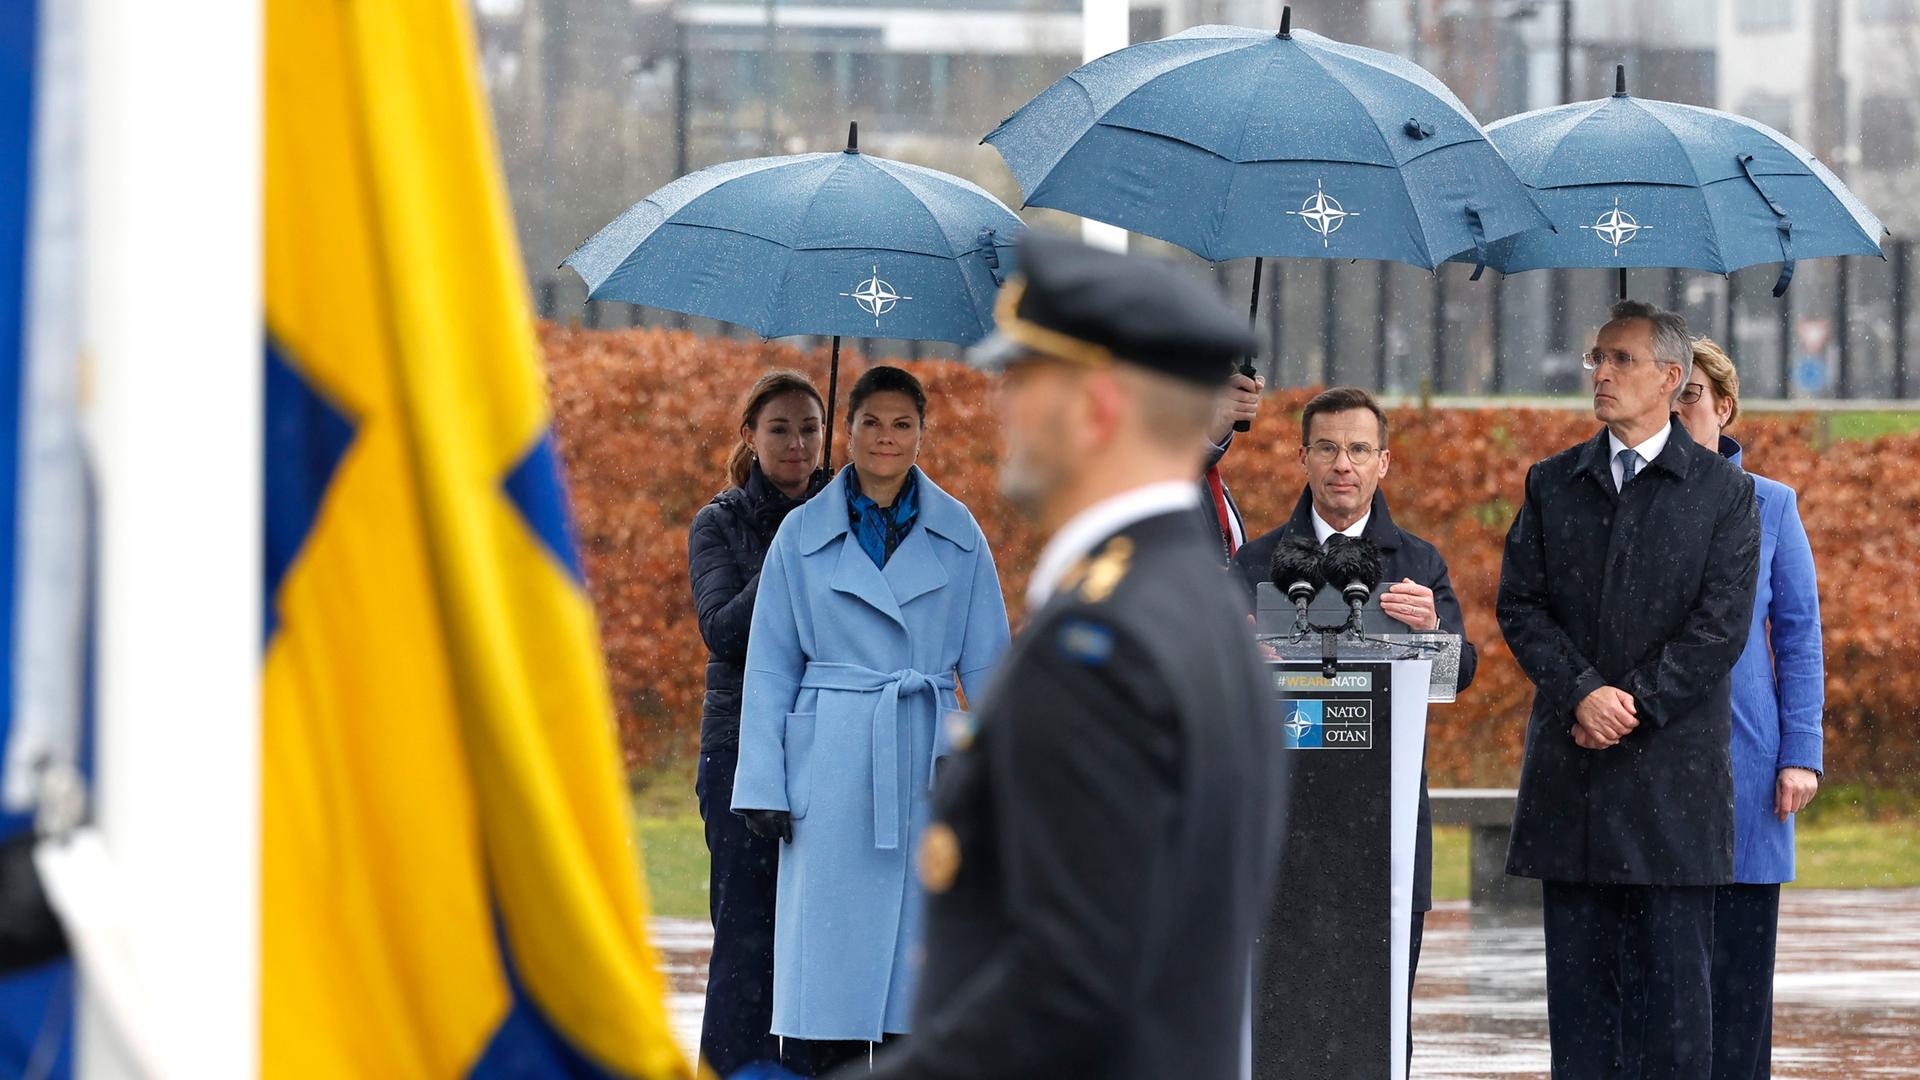 Schwedens Kronprinzessin Victoria (l-r), Ulf Kristersson, Ministerpräsident von Schweden, und Jens Stoltenberg, NATO-Generalsekretär, verfolgen vor dem NATO-Hauptquartier die Zeremonie zur Aufnahme Schwedens.